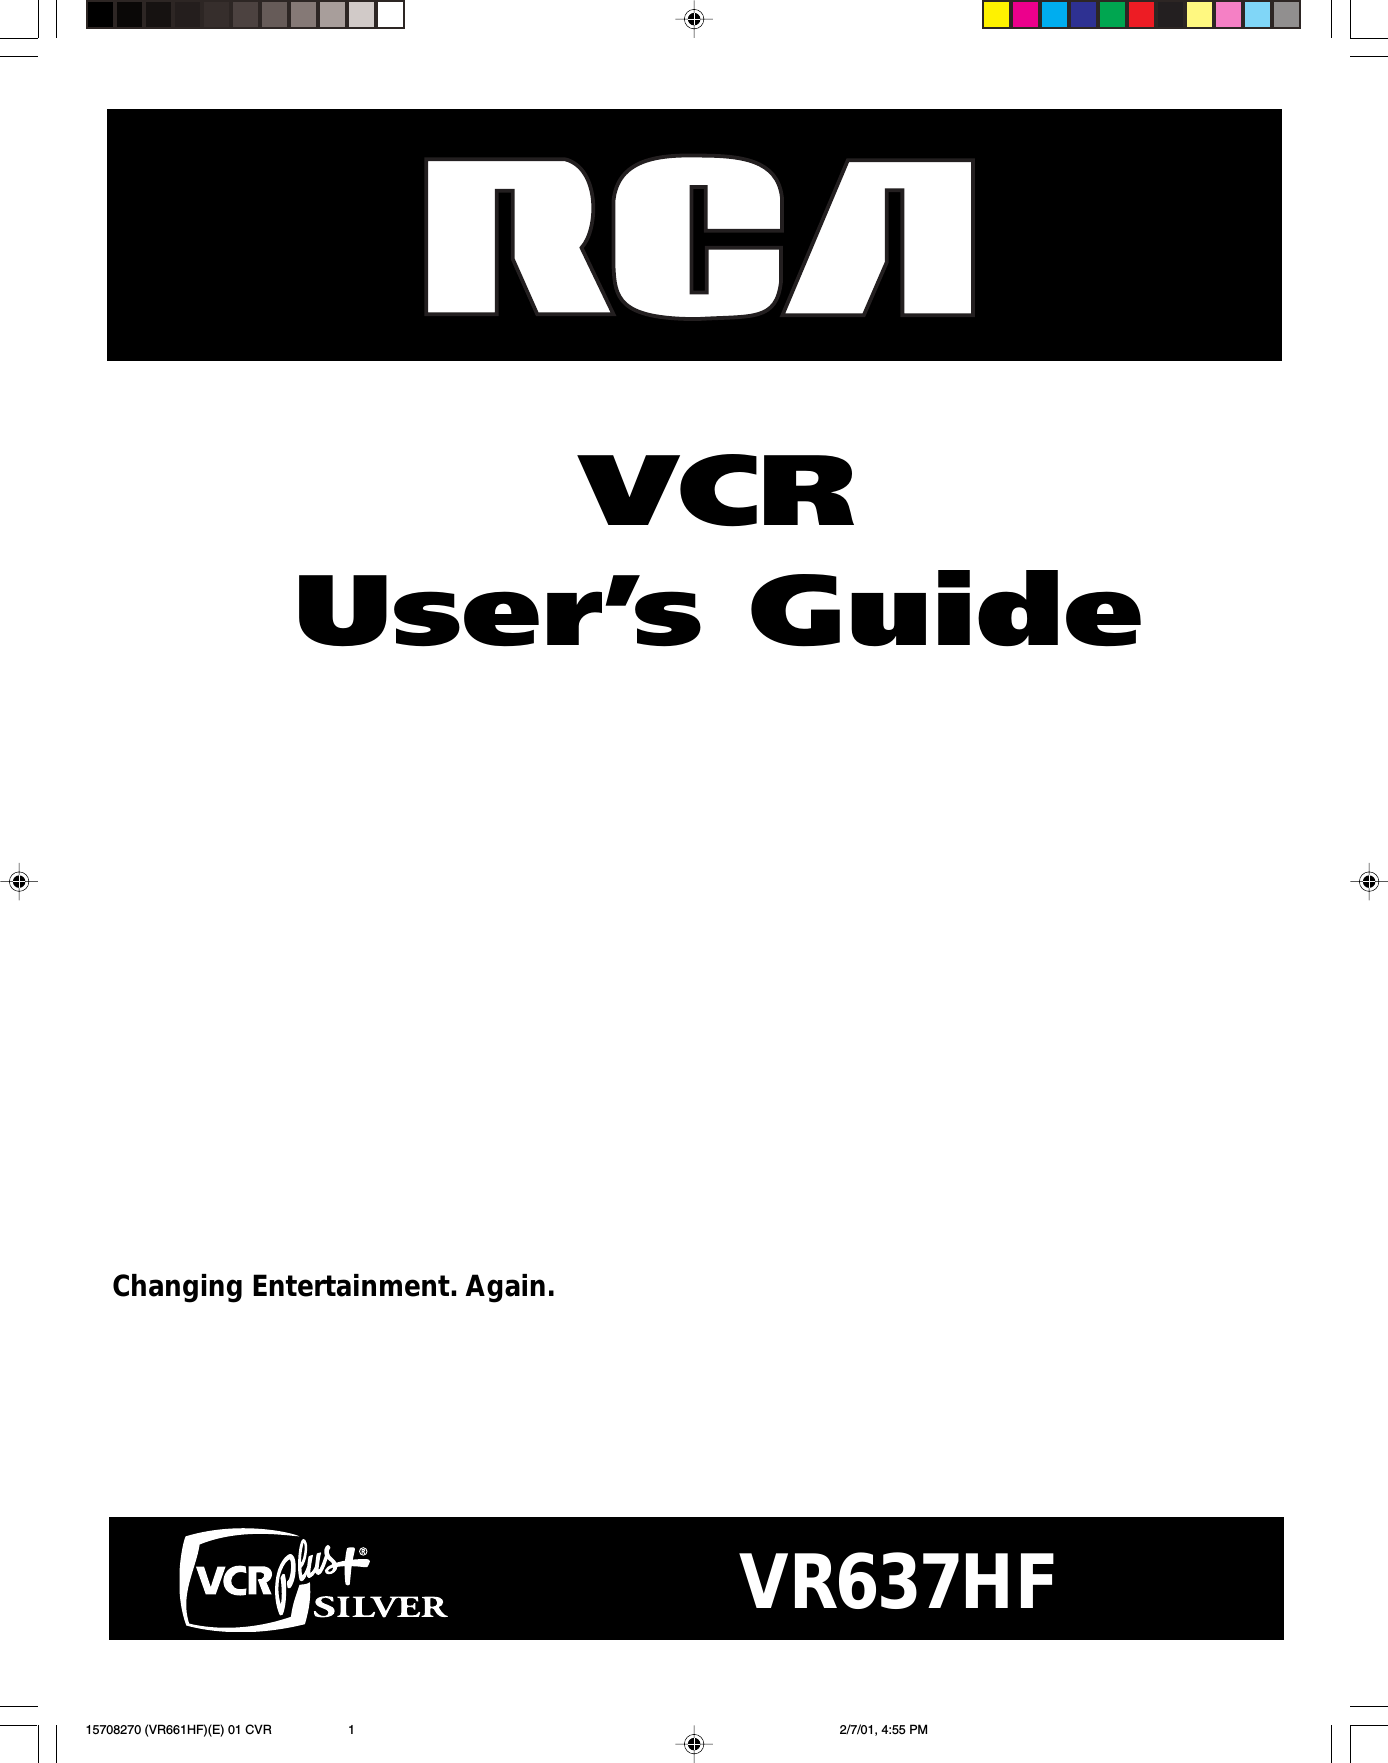 VCRUser’s GuideChanging Entertainment. Again.VR637HF15708270 (VR661HF)(E) 01 CVR 2/7/01, 4:55 PM1